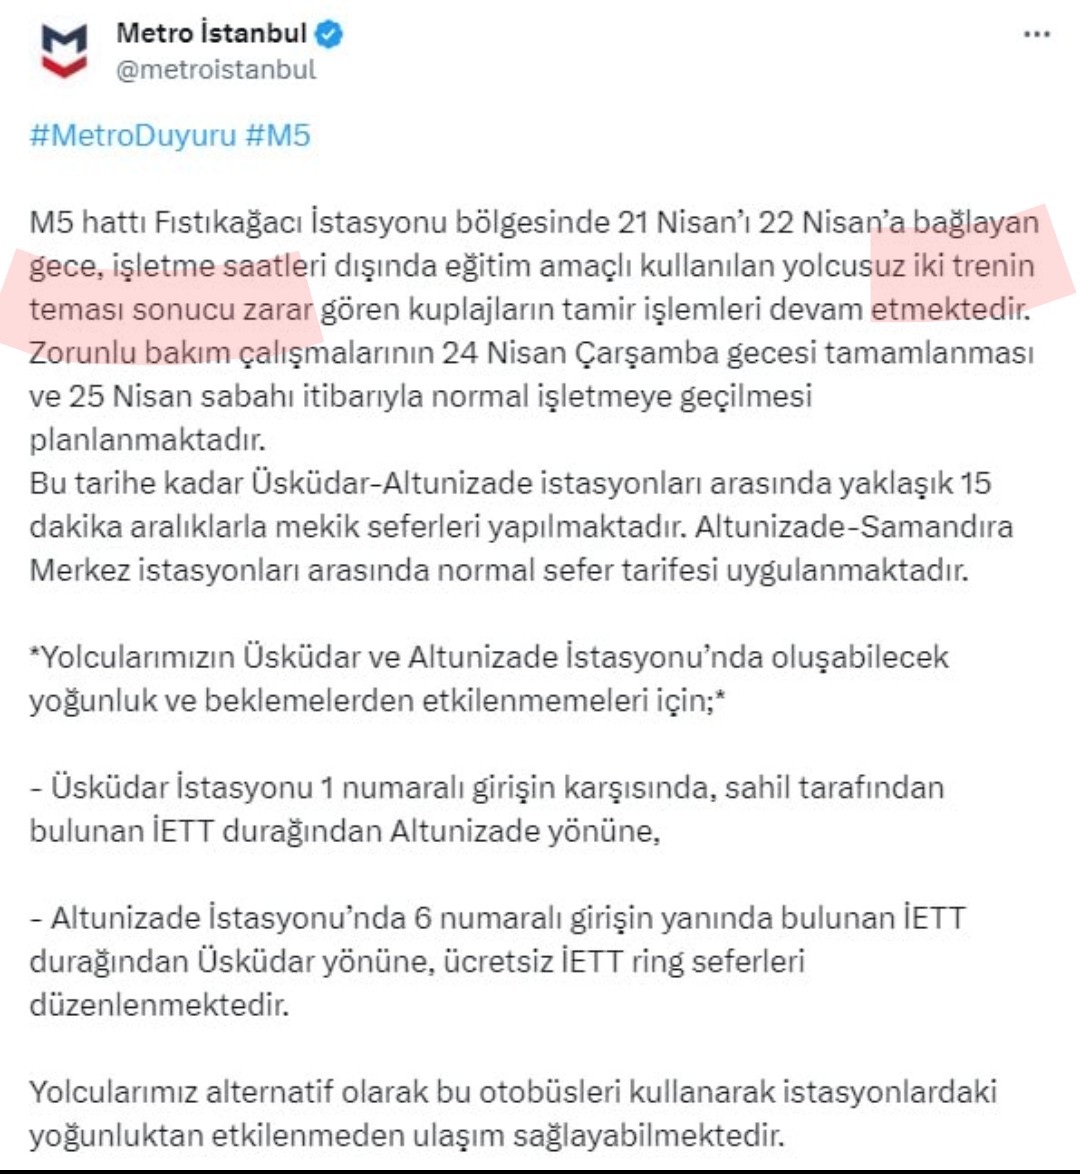 İki koca tren çarpışmış,İBB mevzuyu Ahmet Çakar'ın penaltı pozisyonu anlattığı gibi anlatıyor 😁 İki trenin teması ney lan? Hazır yabancı hakem Steinmeier de Türkiye'deyken VAR'a gidelim isterseniz 😁